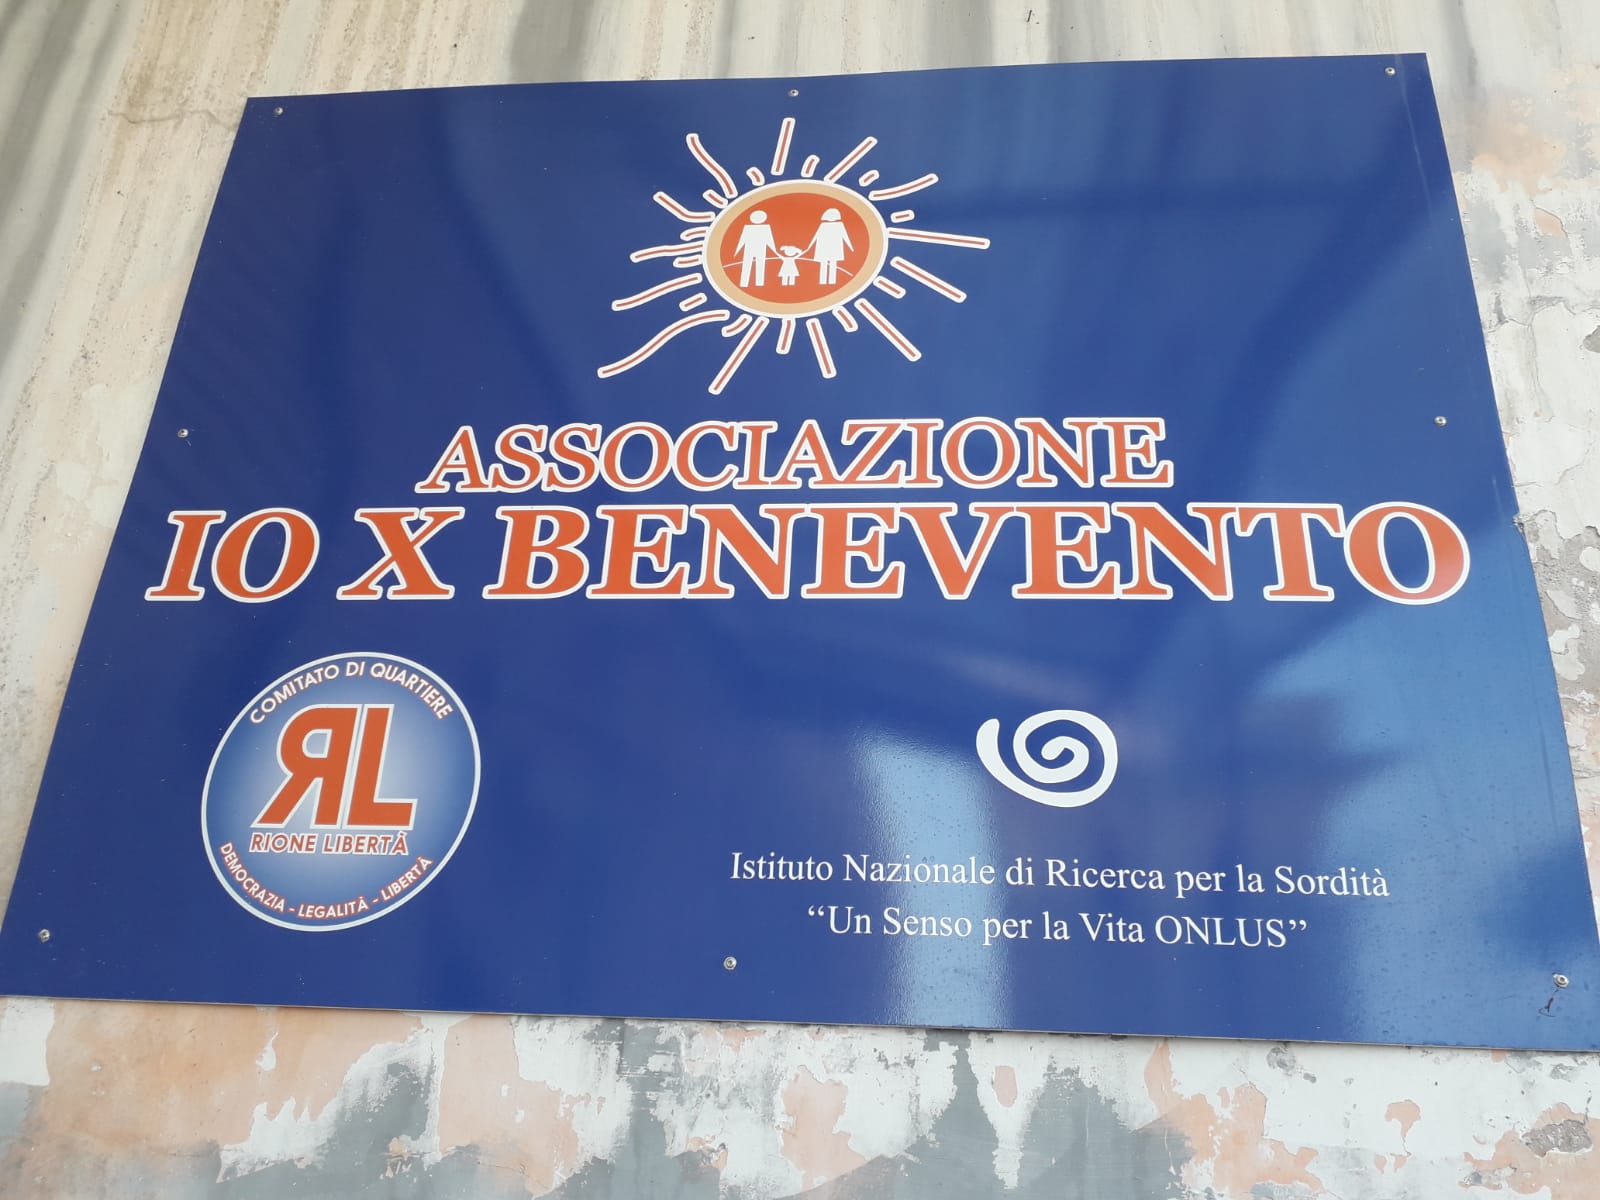 Assemblea sindaci comune, IoXBenevento: Ferrante strumentalizza la sanita’, 19 ottobre protesta in piazza